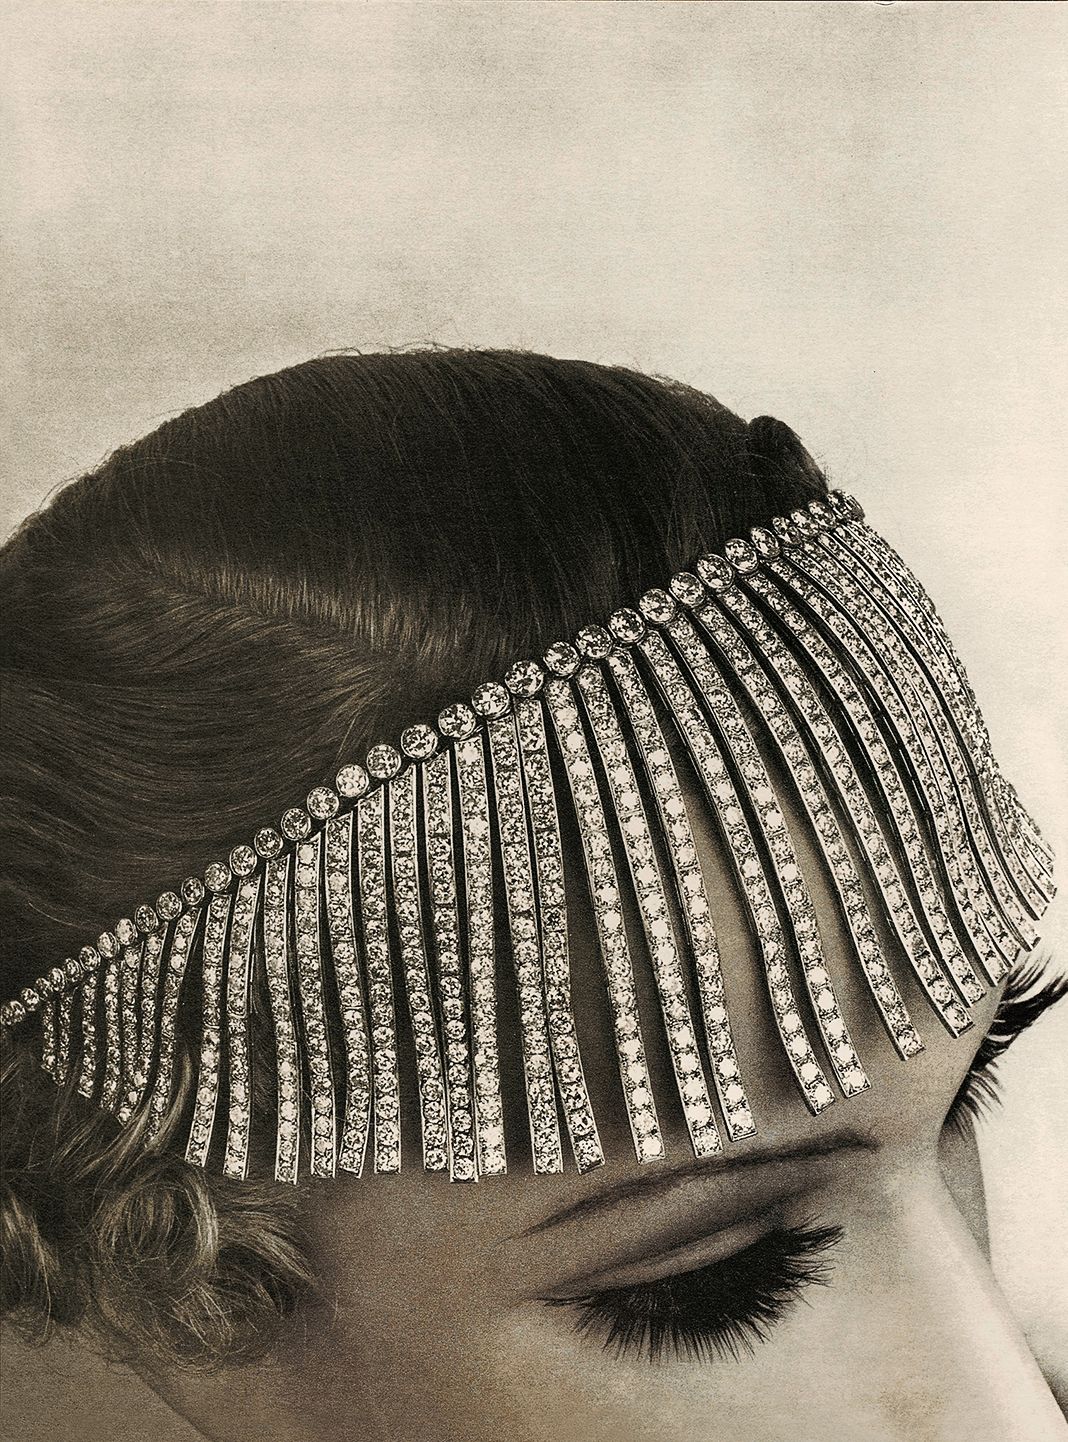 ожерелье «Бахрома» из коллекции Bijoux de Diamants, созданной Габриэль Шанель в 1932 году. Фото: Robert Bresson